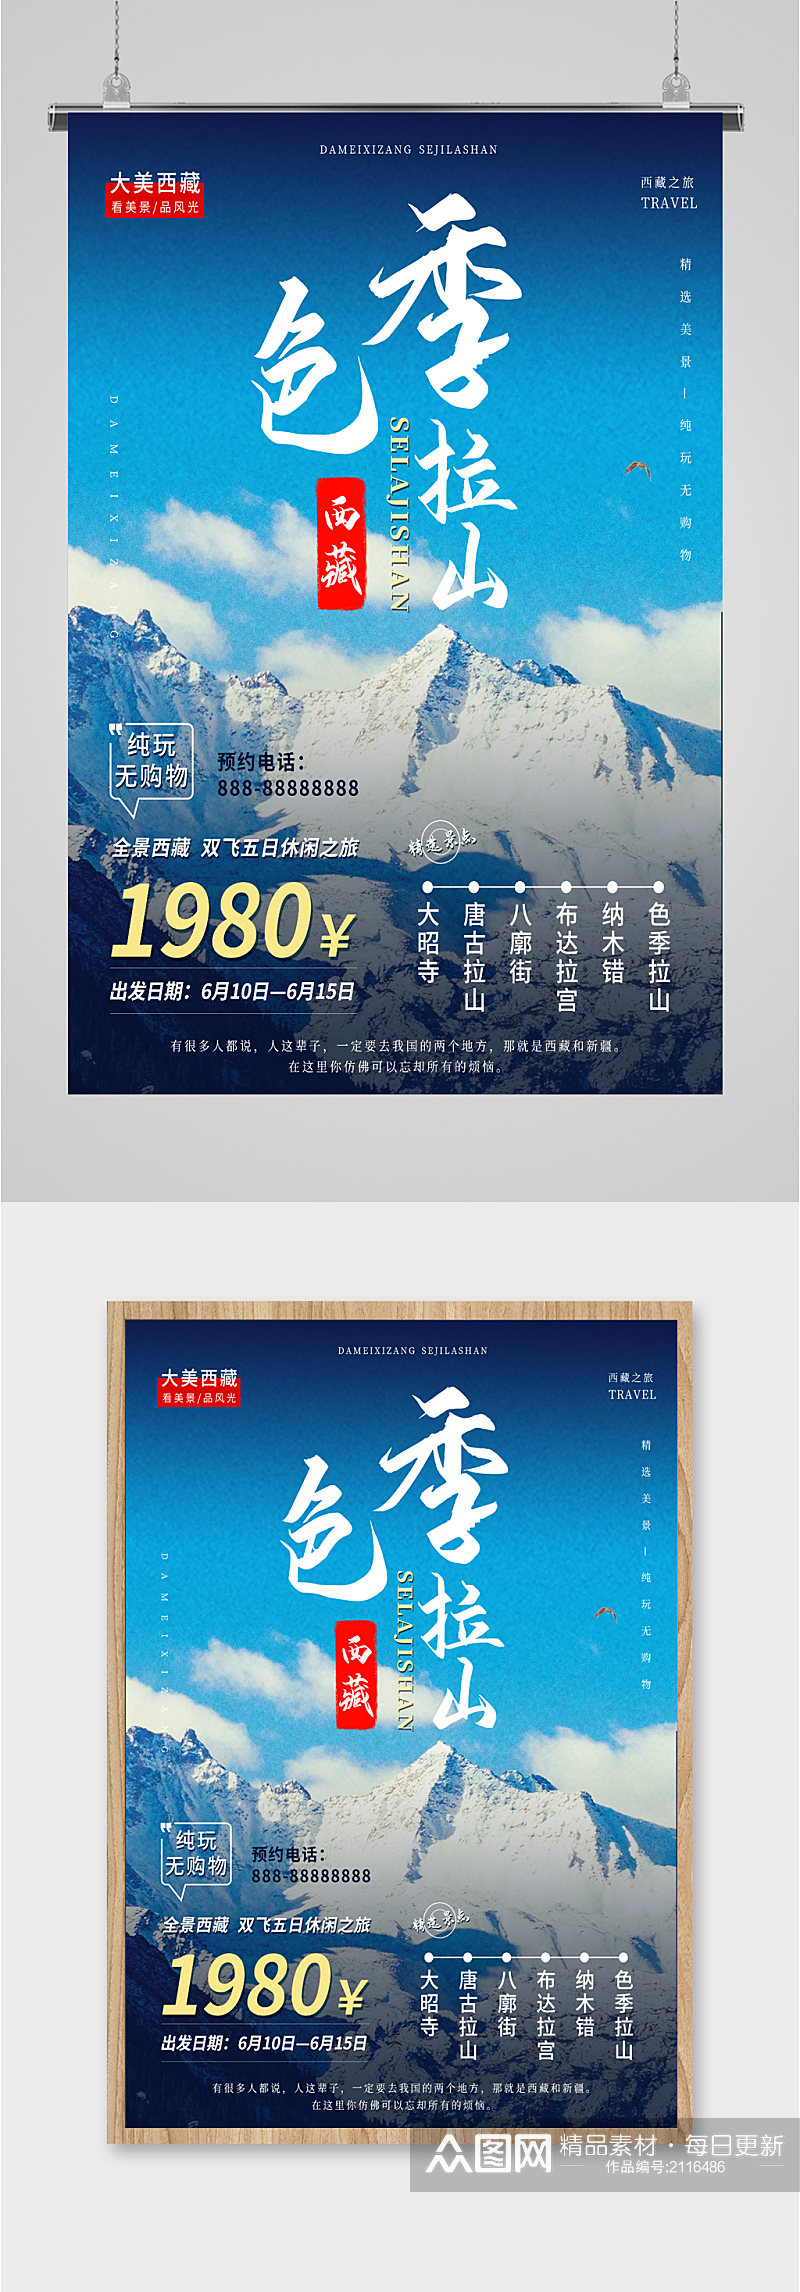 西藏旅游宣传海报素材